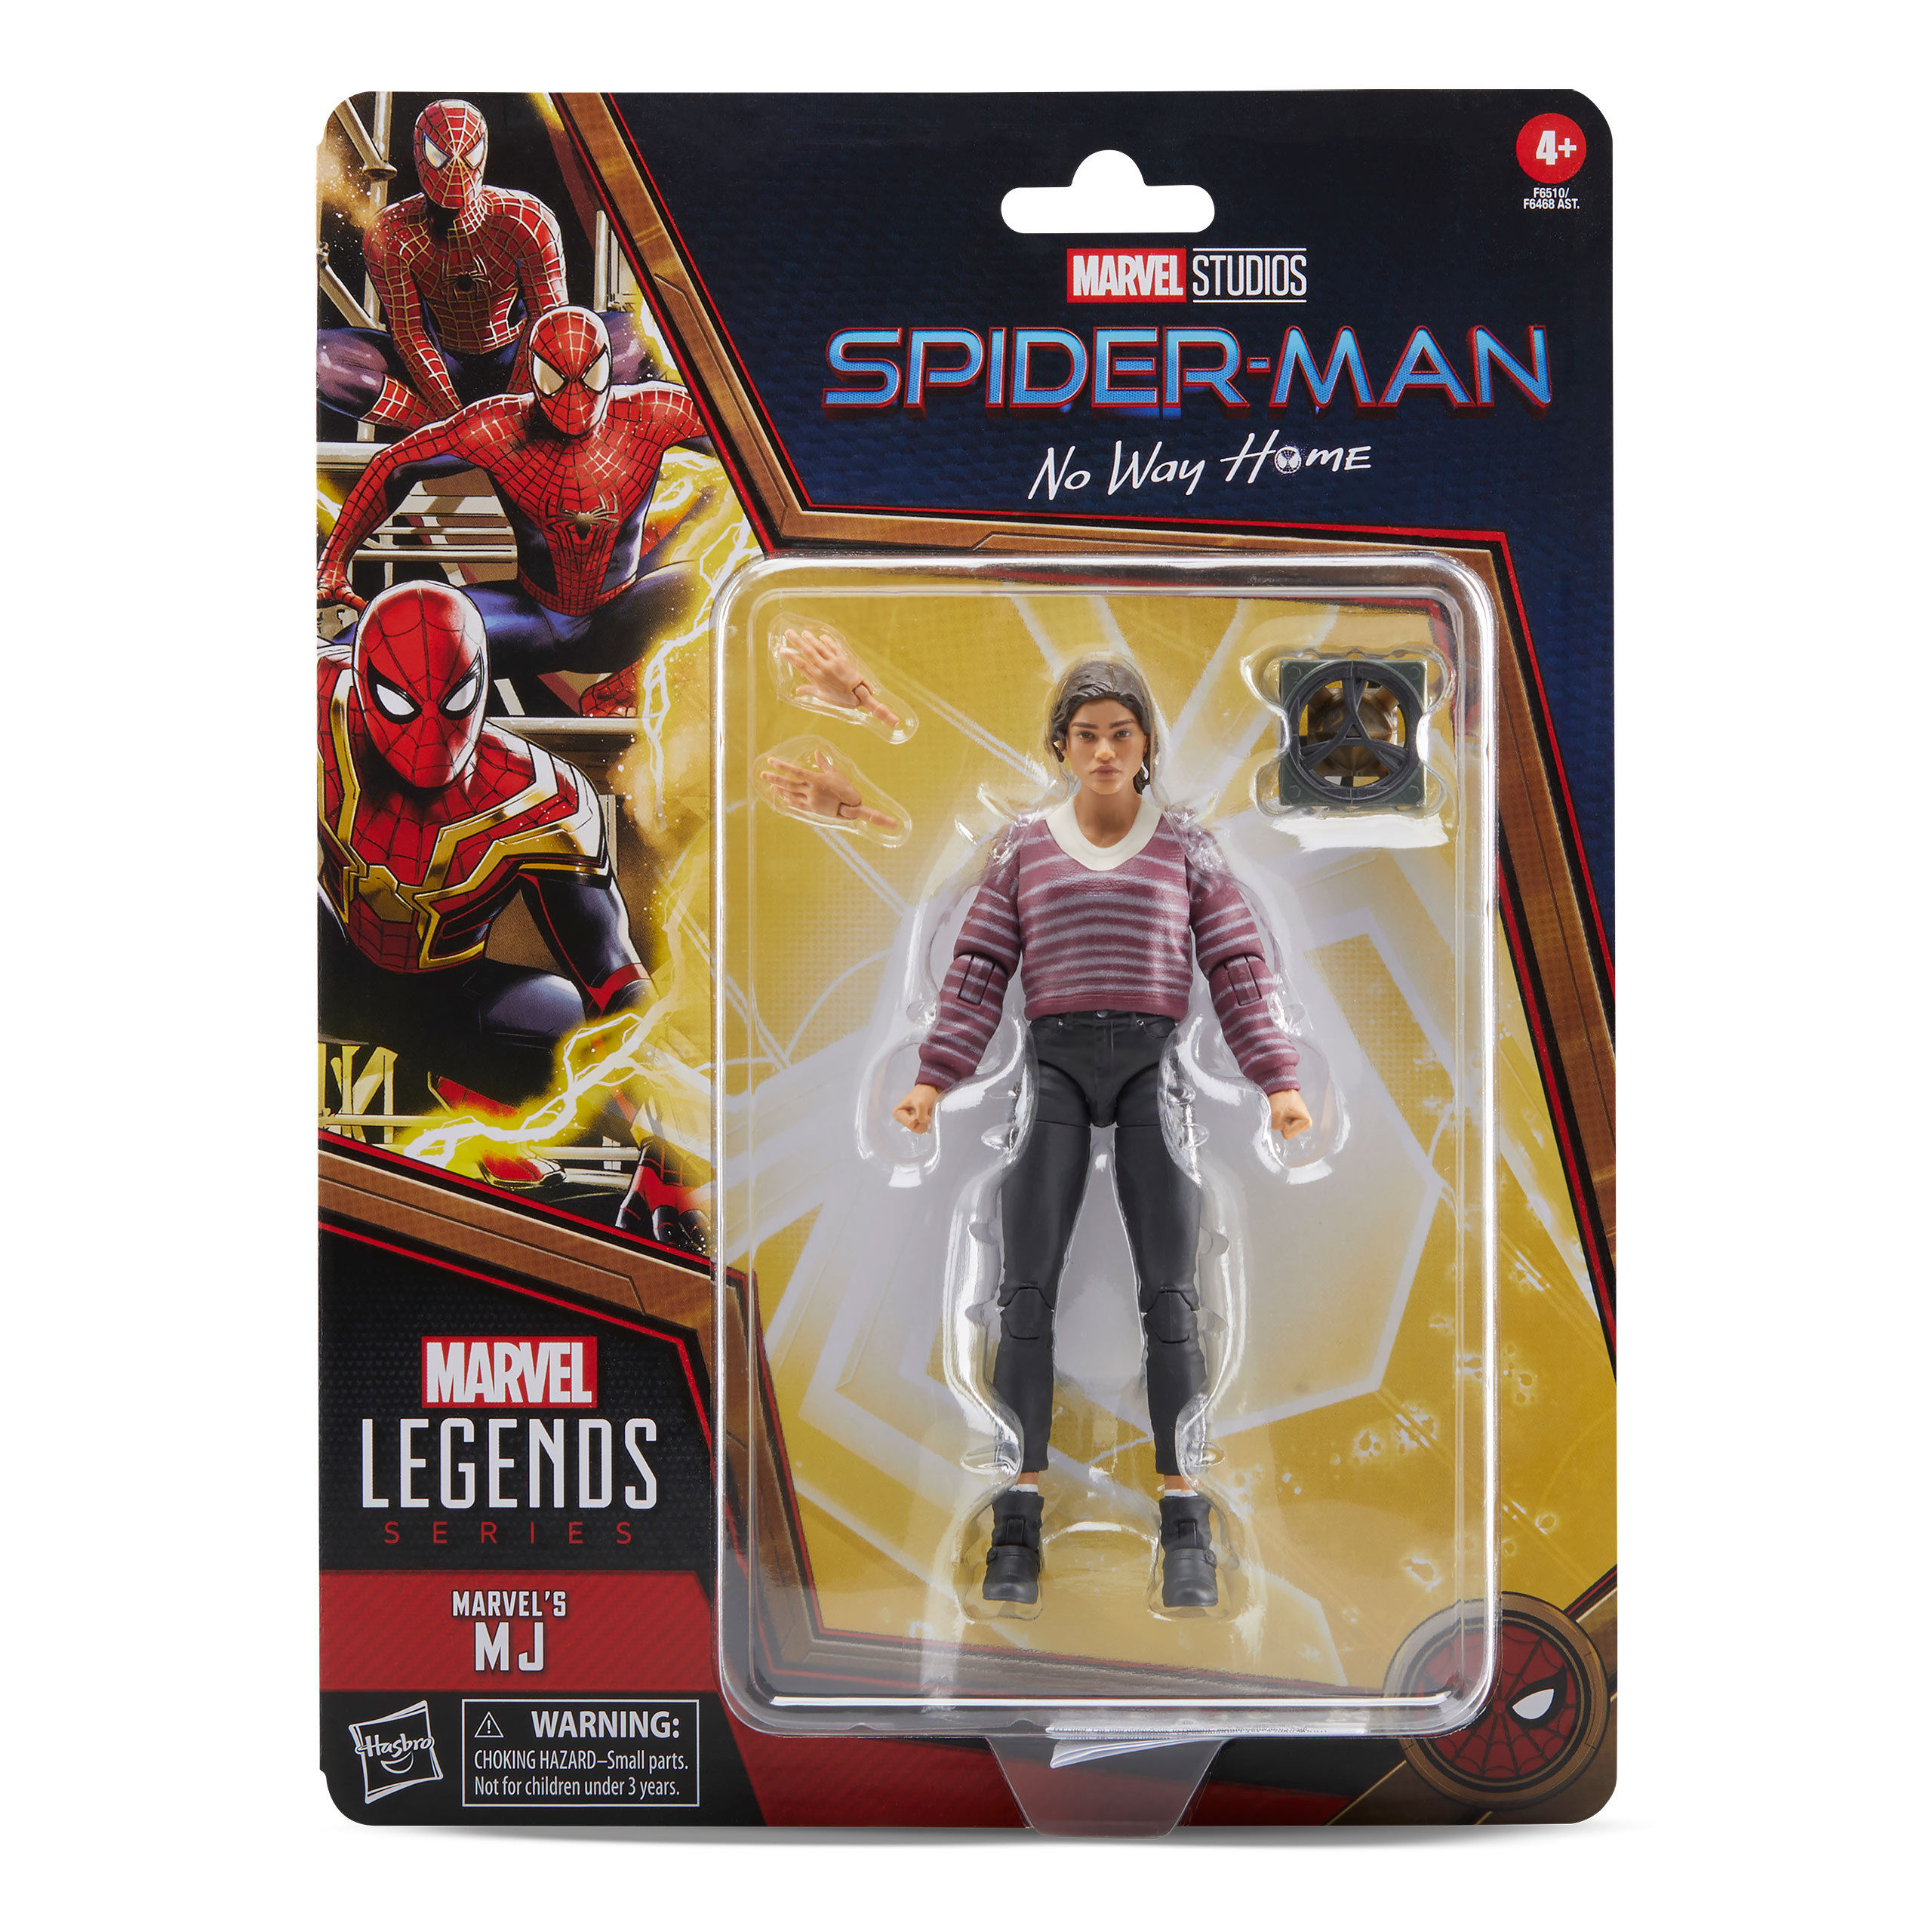 Spider-Man: No Way Home - MJ Marvel Legends Action Figure